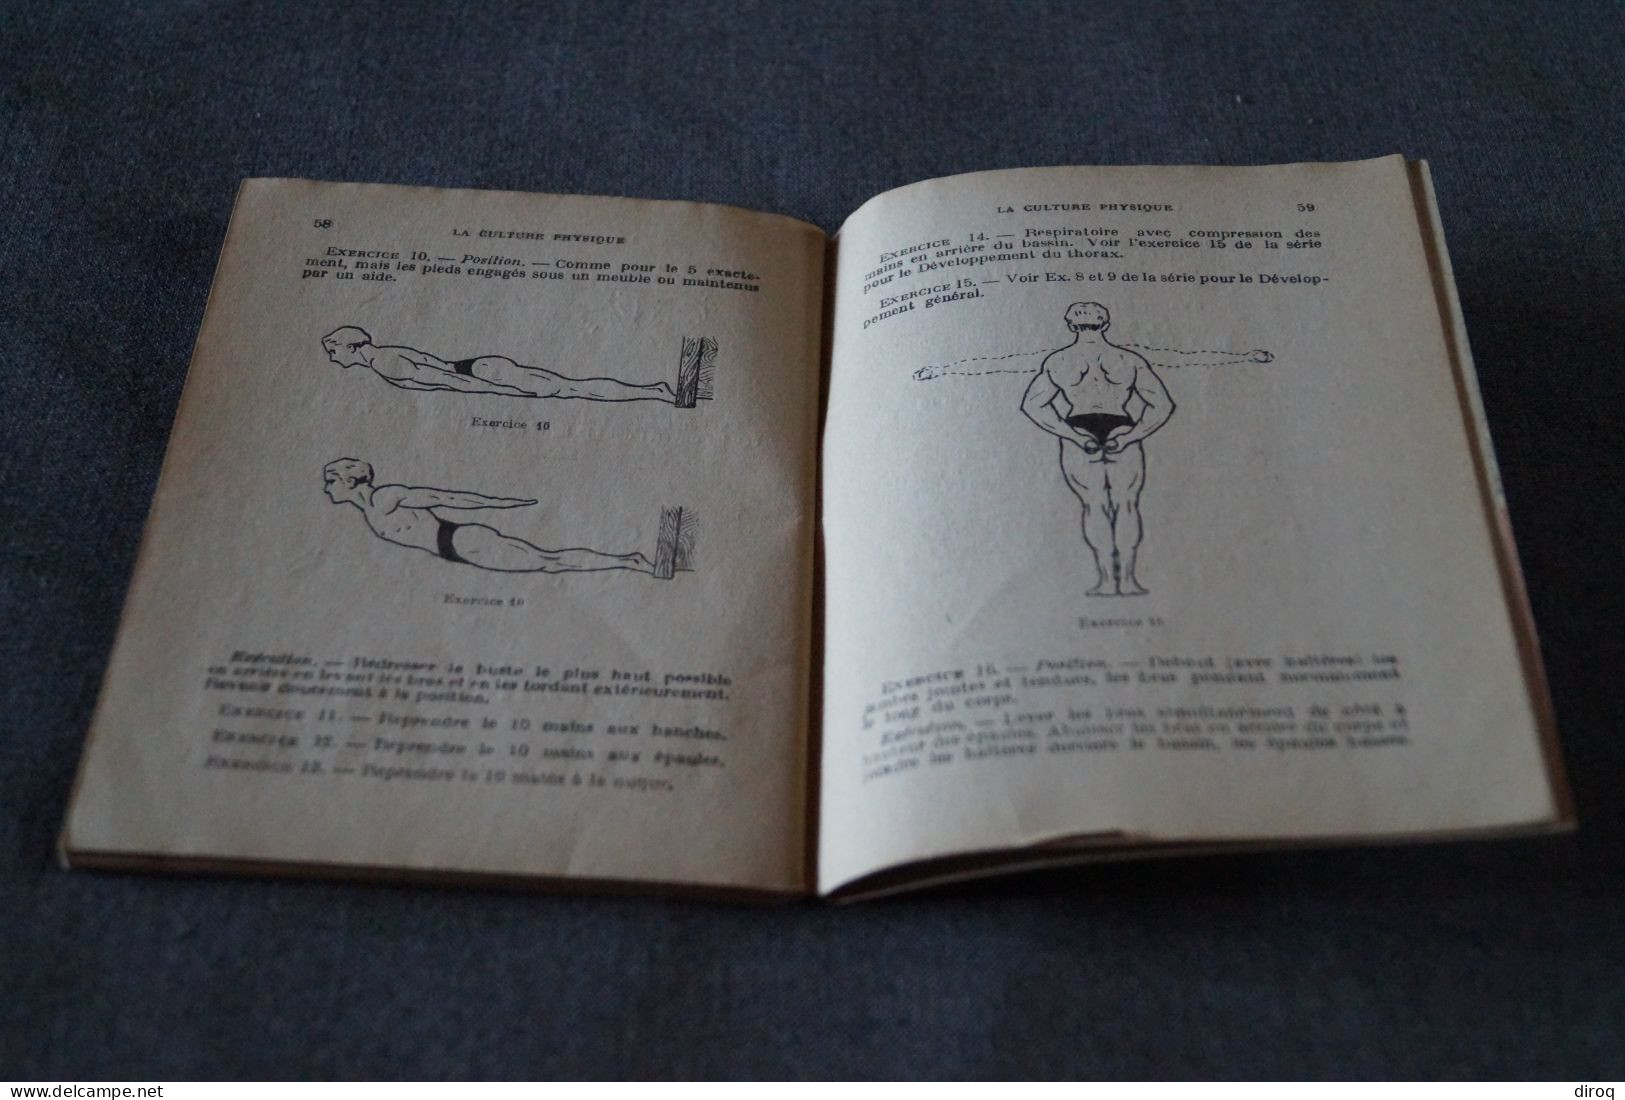 RARE,Le Medicine-Ball,1937,Georges Lerousseau,complet 32 pages,ancien,complet,18 Cm. sur 14 Cm.